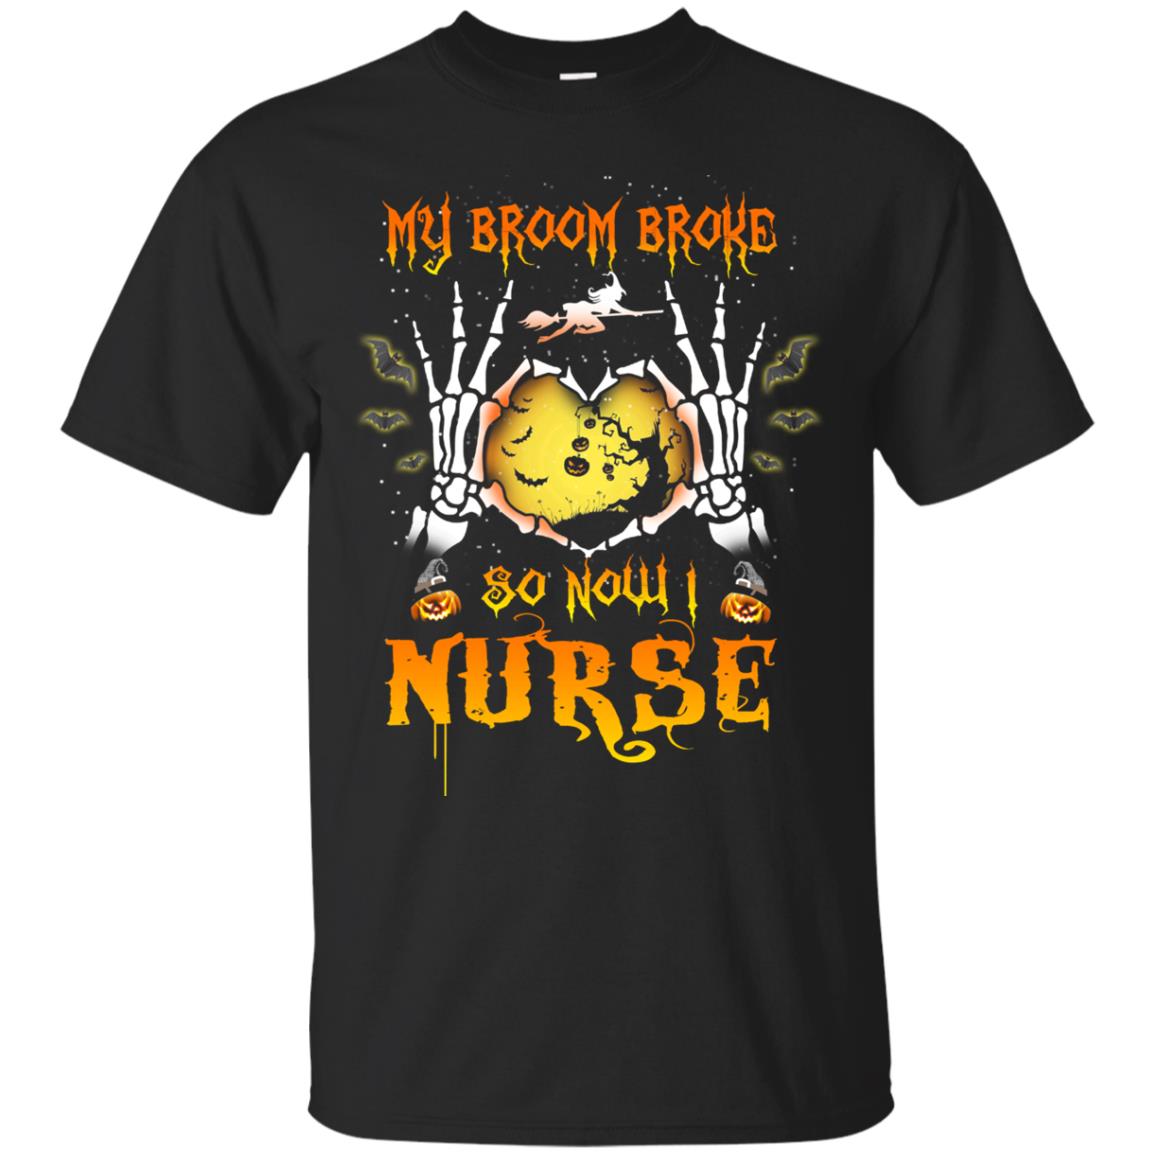 My broom broke so now I Nurse shirt, hoodie, tank